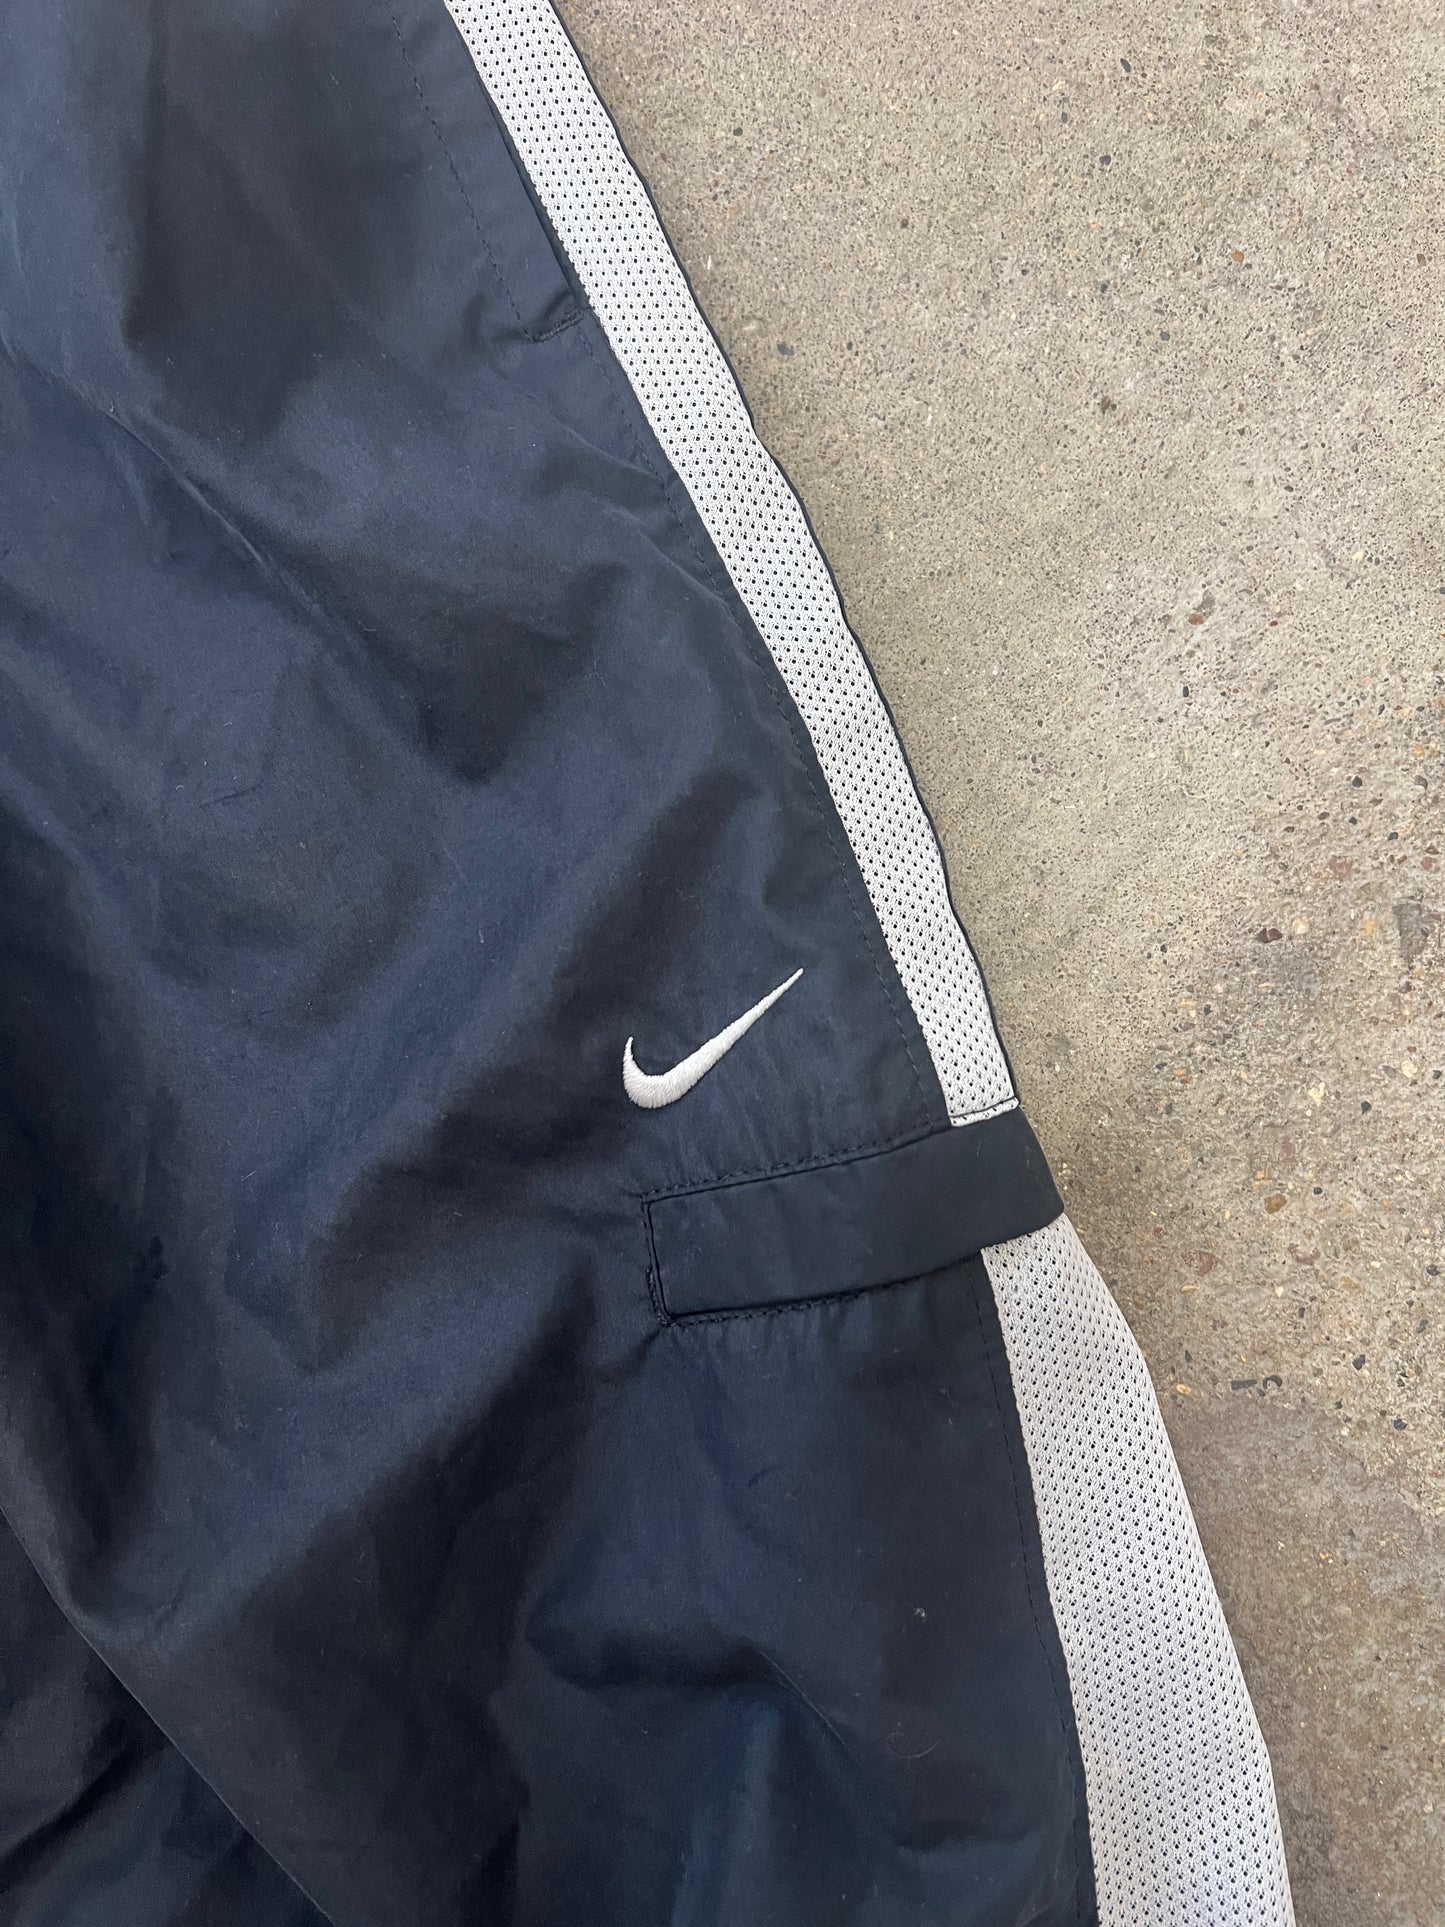 Vintage Grey Nike Track Pants - S